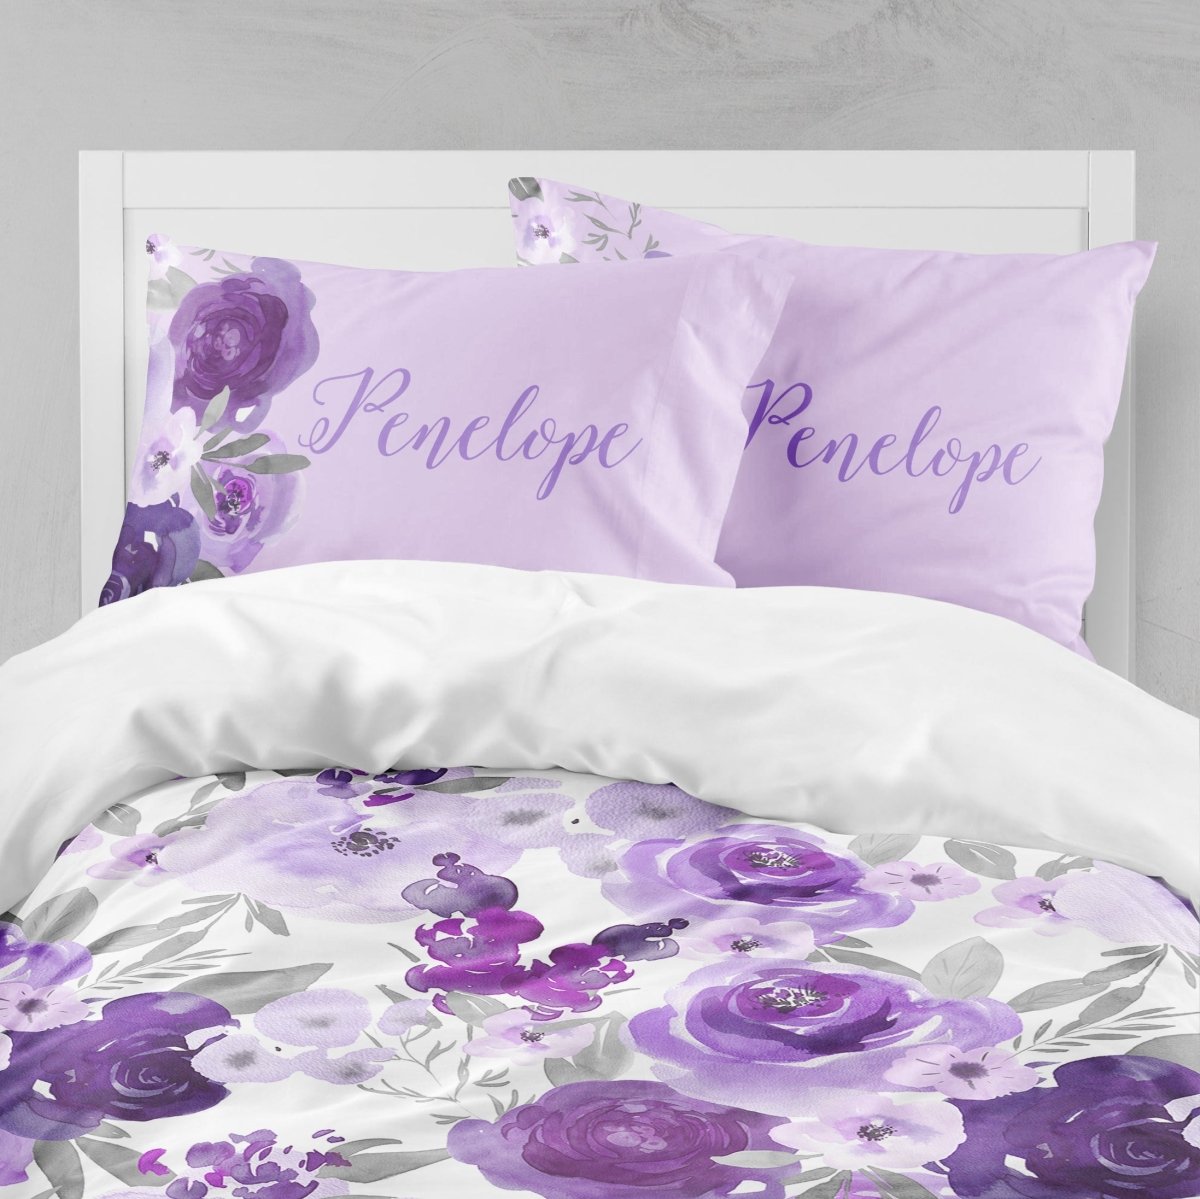 Large Purple Floral Kids Bedding Set (Comforter or Duvet Cover) - gender_girl, Purple Floral Elephant, text